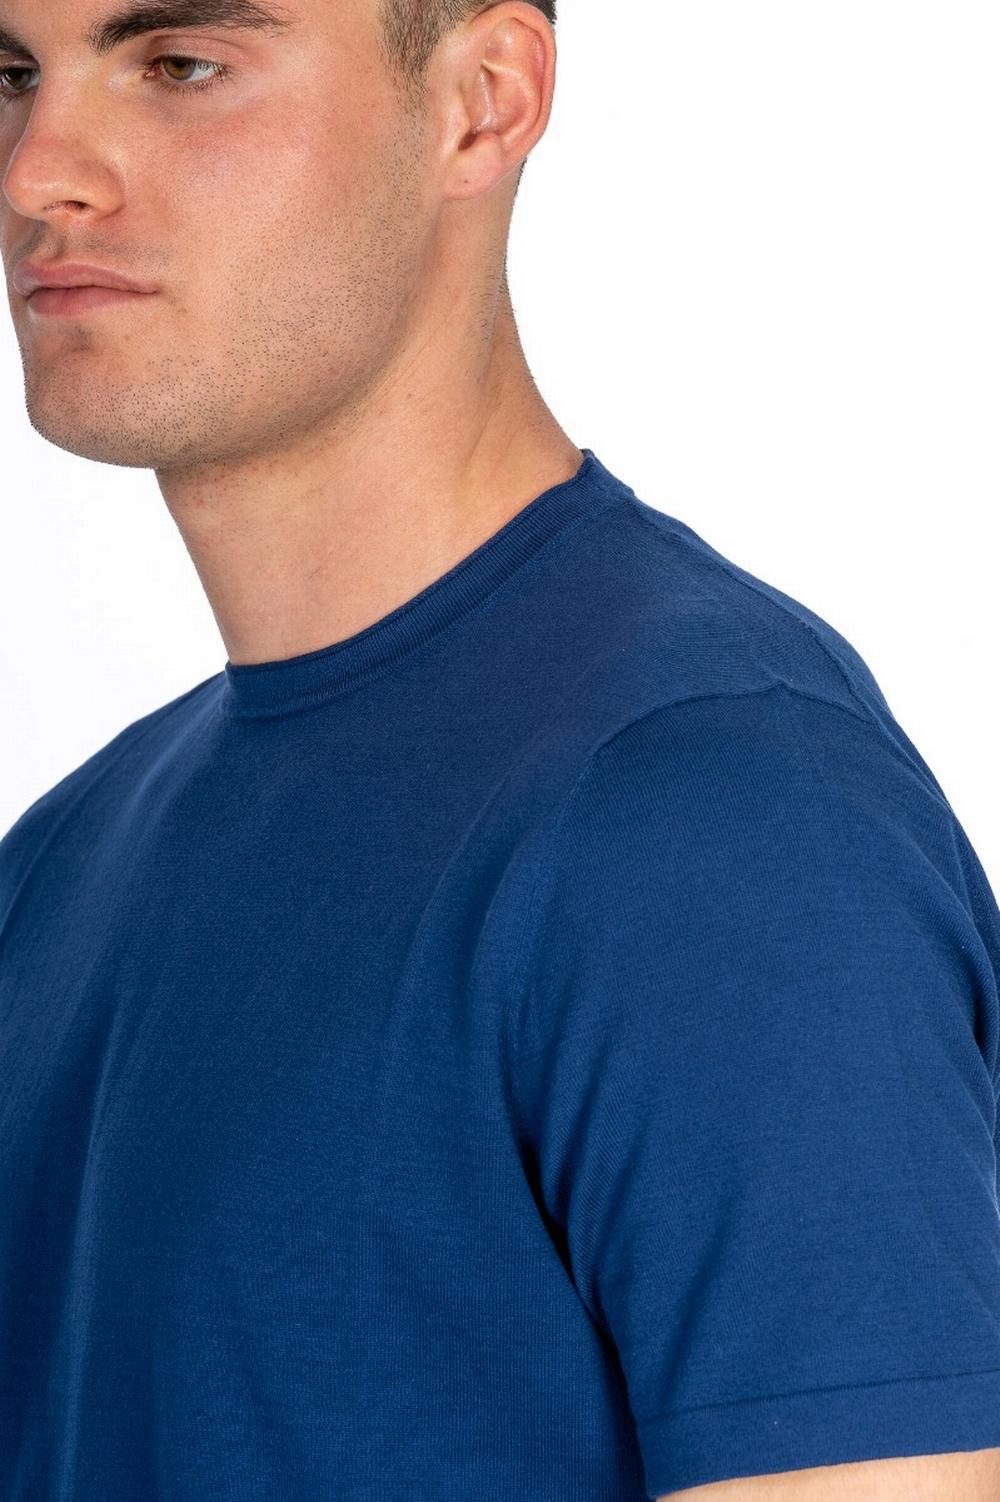 Kangra - T-Shirt Collo Rotolino Blu Marino - 6028 21 060